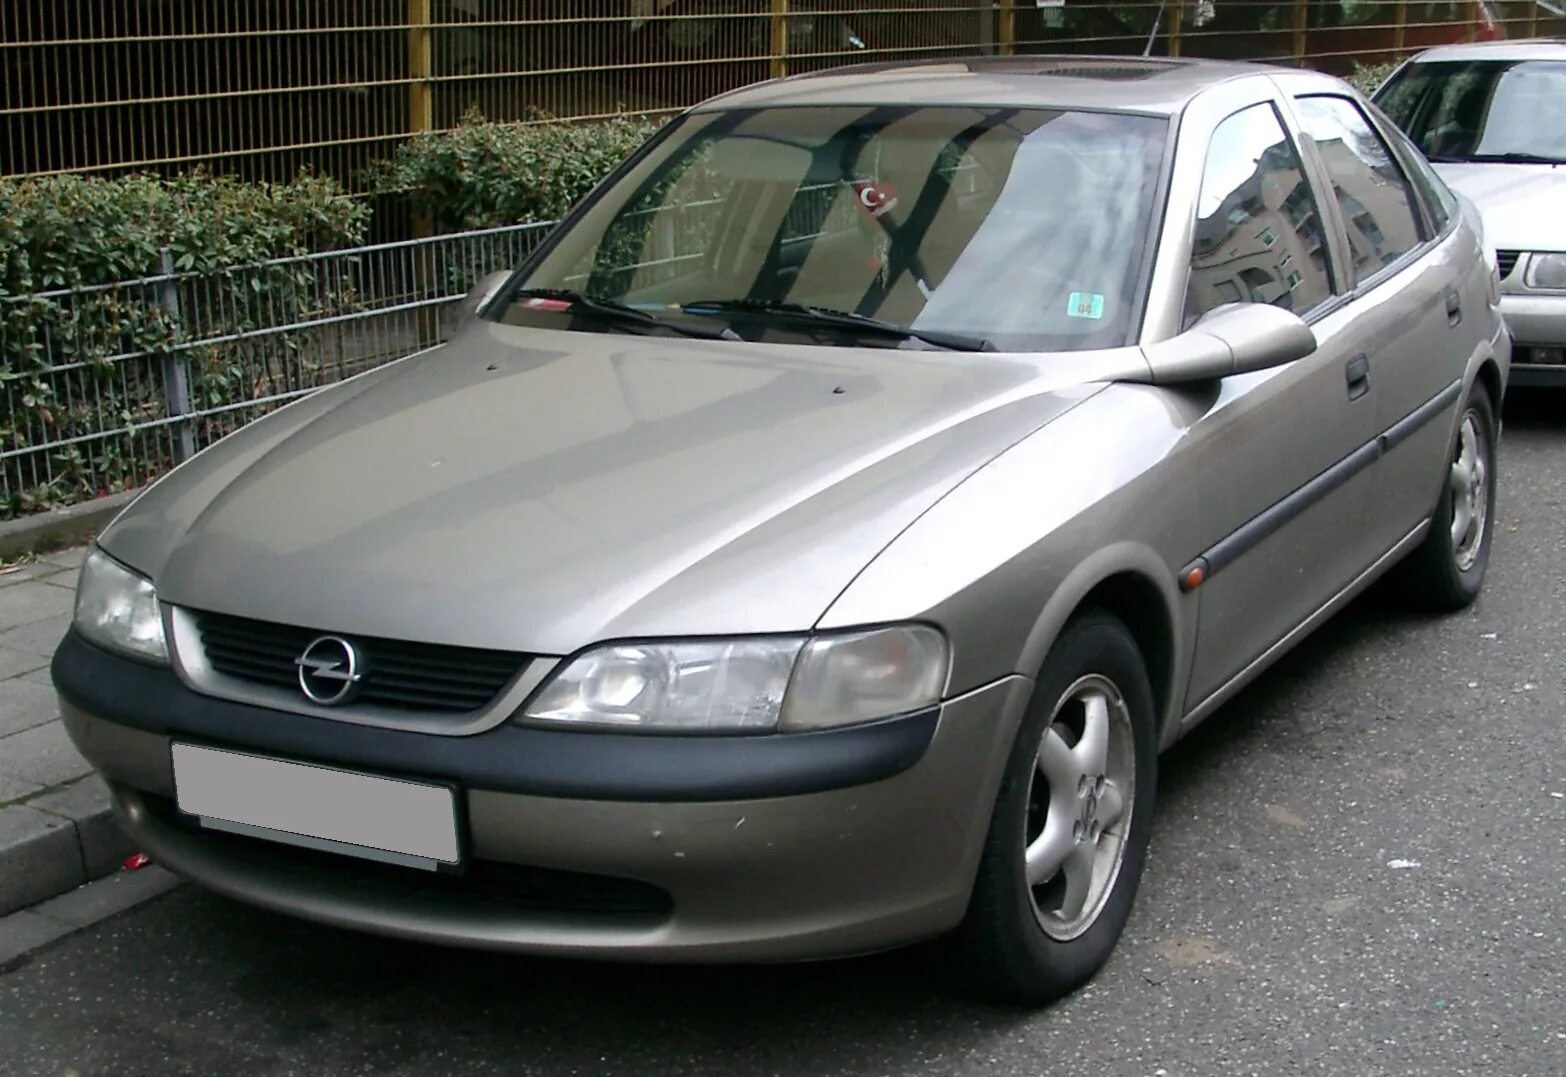 Opel Vectra b. Опель Вектра 2 1996. Опель Вектра 1.6 1996. Opel Vectra b 1.6.